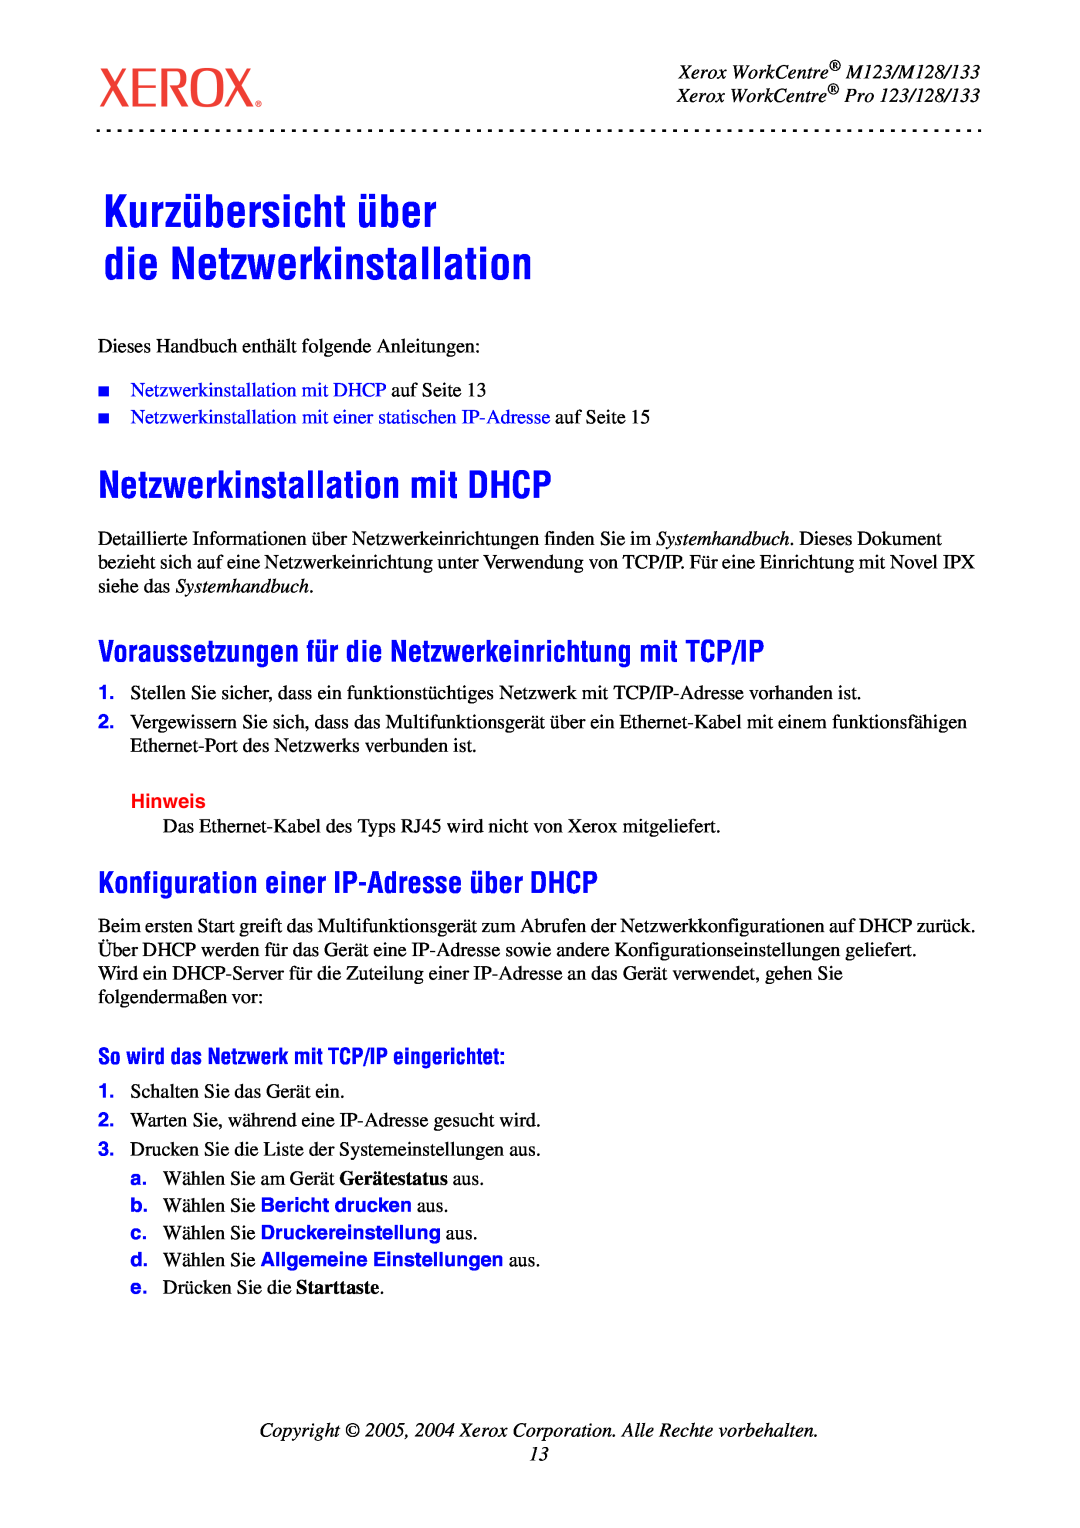 Xerox manual Kurzübersicht über die Netzwerkinstallation, Netzwerkinstallation mit DHCP, Xerox WorkCentre M123/M128/133 